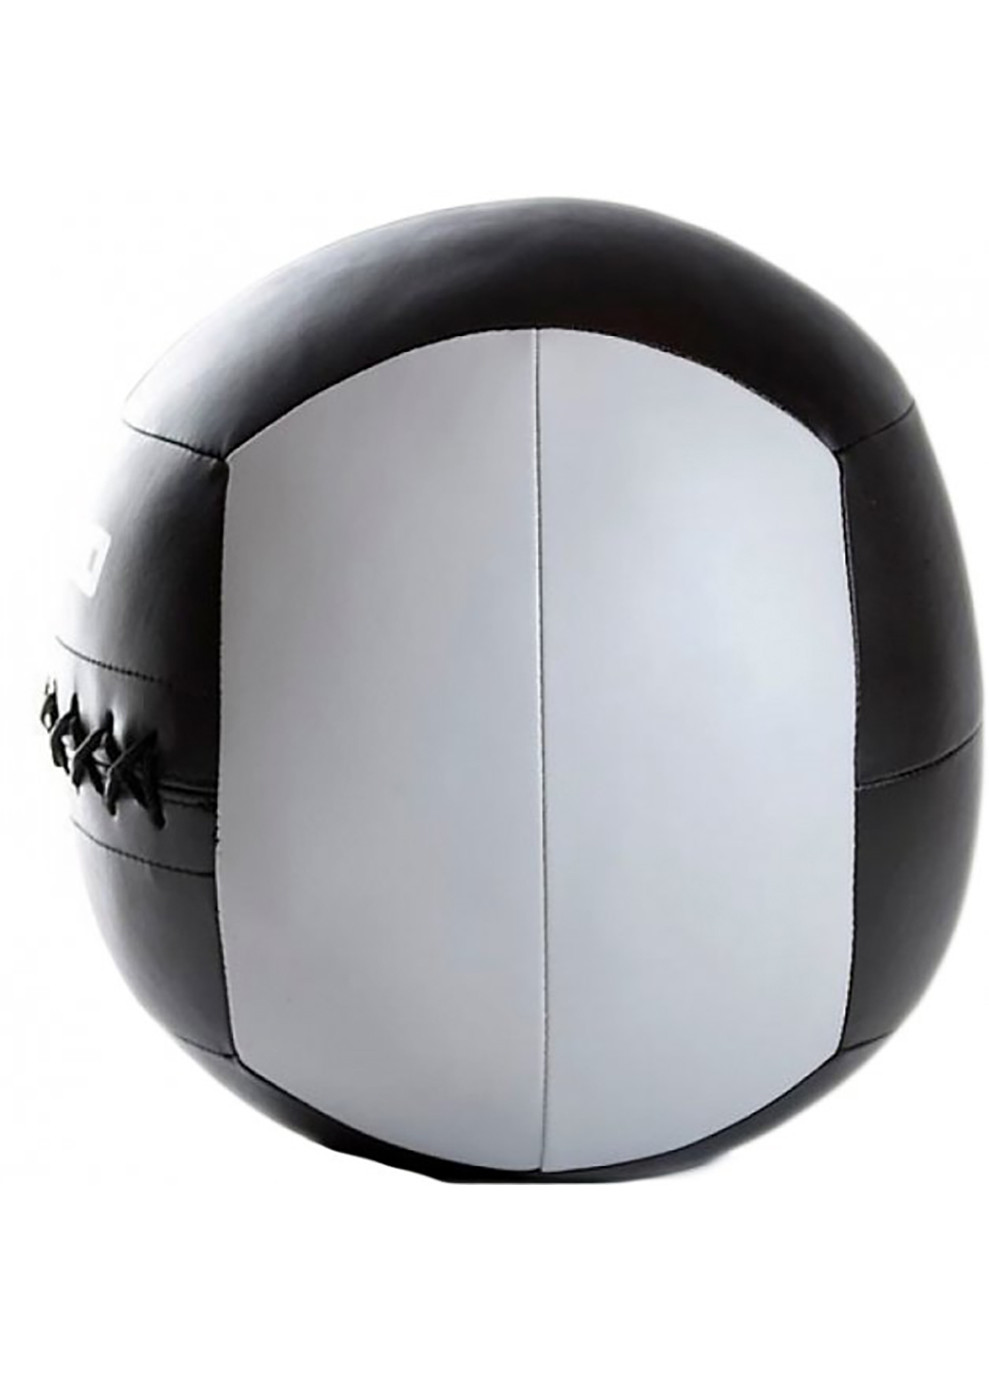 Мяч для кроссфита WALL BALL черный, серый 3кг LivePro (258142088)